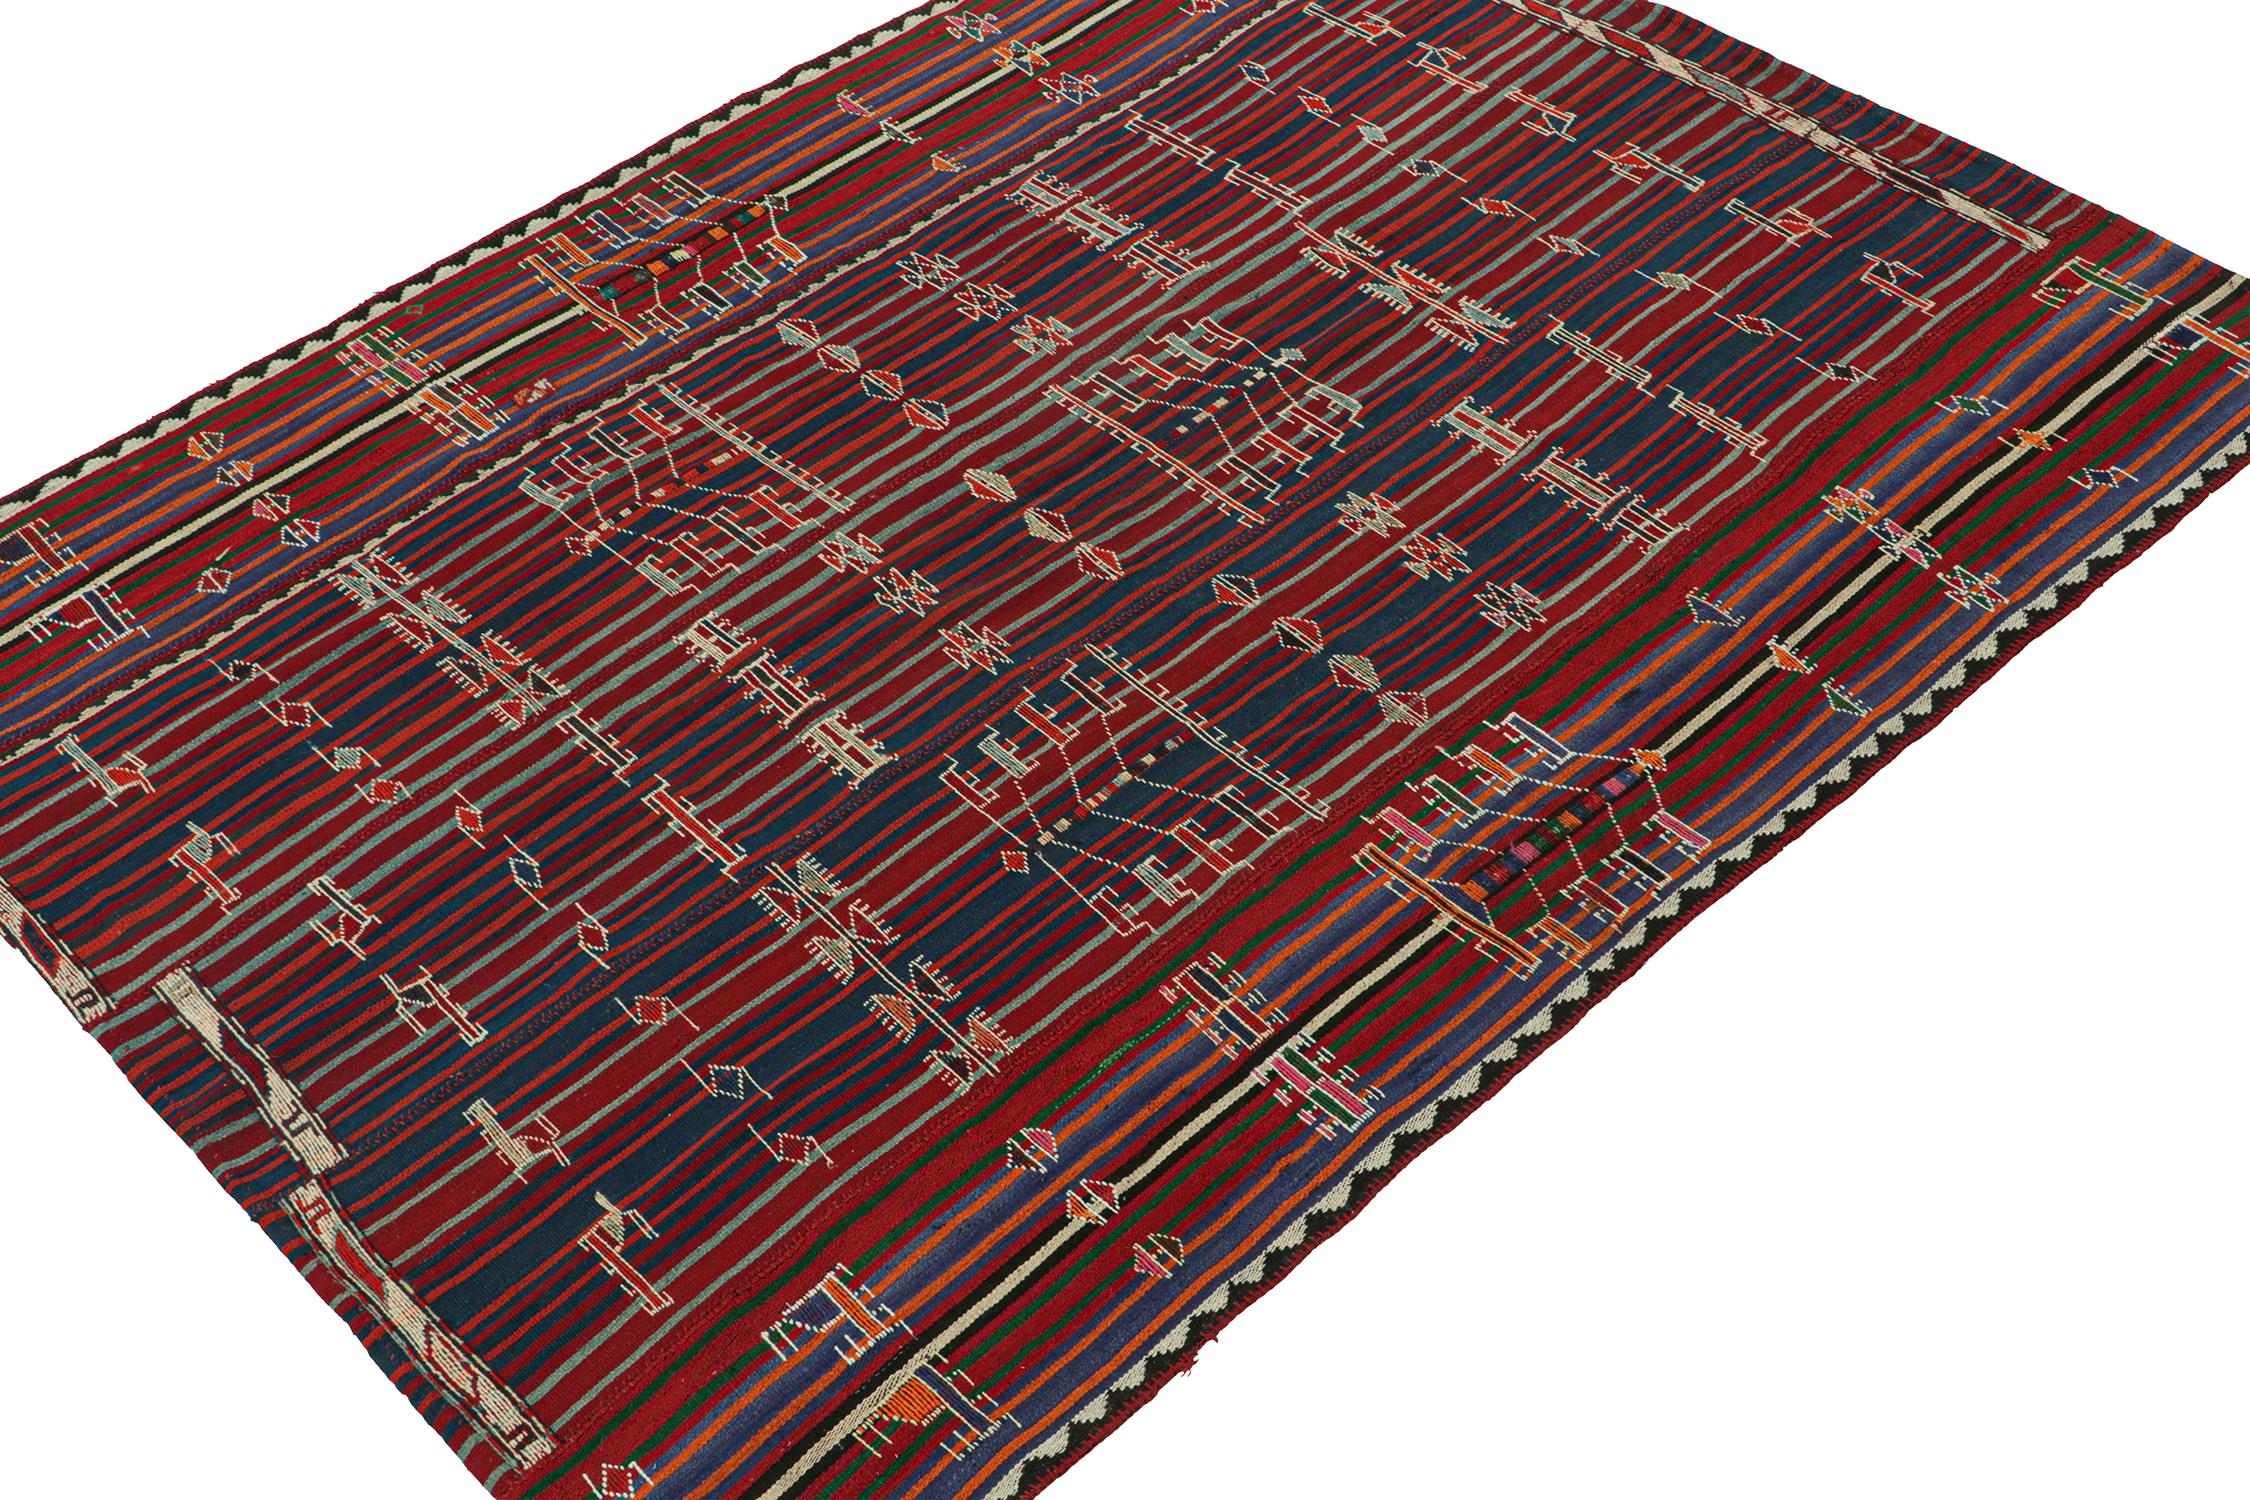 Dieser 7x9 große Schahsavan-Kelim ist ein einzigartiger Stammesteppich aus Persien, der um 1950-1960 entstand. Handgewebt aus Wolle.

Weiter zum Design:

Das Feld ist mit Streifen und gestickten Motiven in Marineblau und Rot mit orangefarbenen und